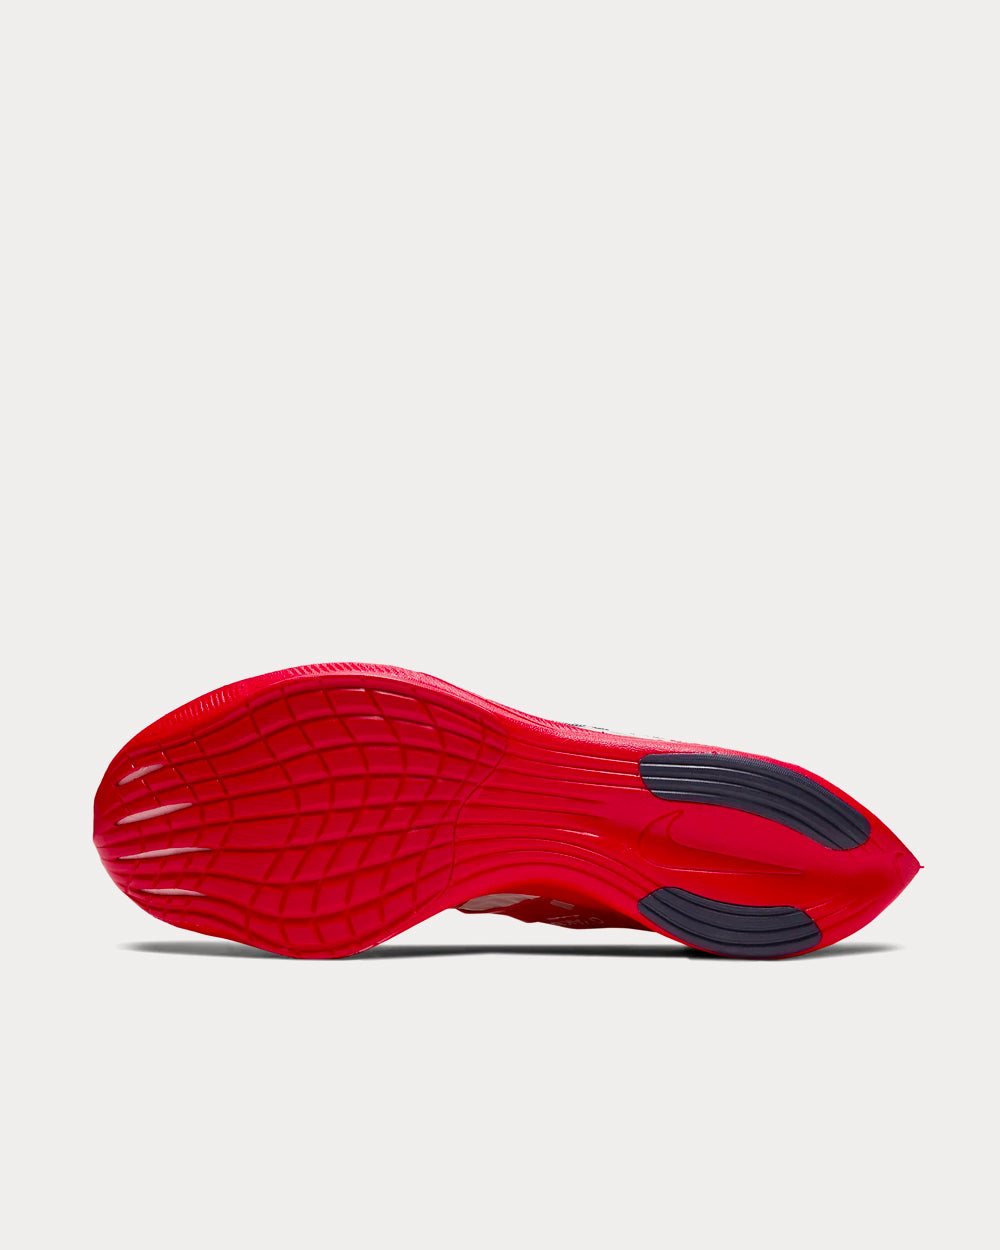 Nike ZoomX Vaporfly Next% Gyakusou Red